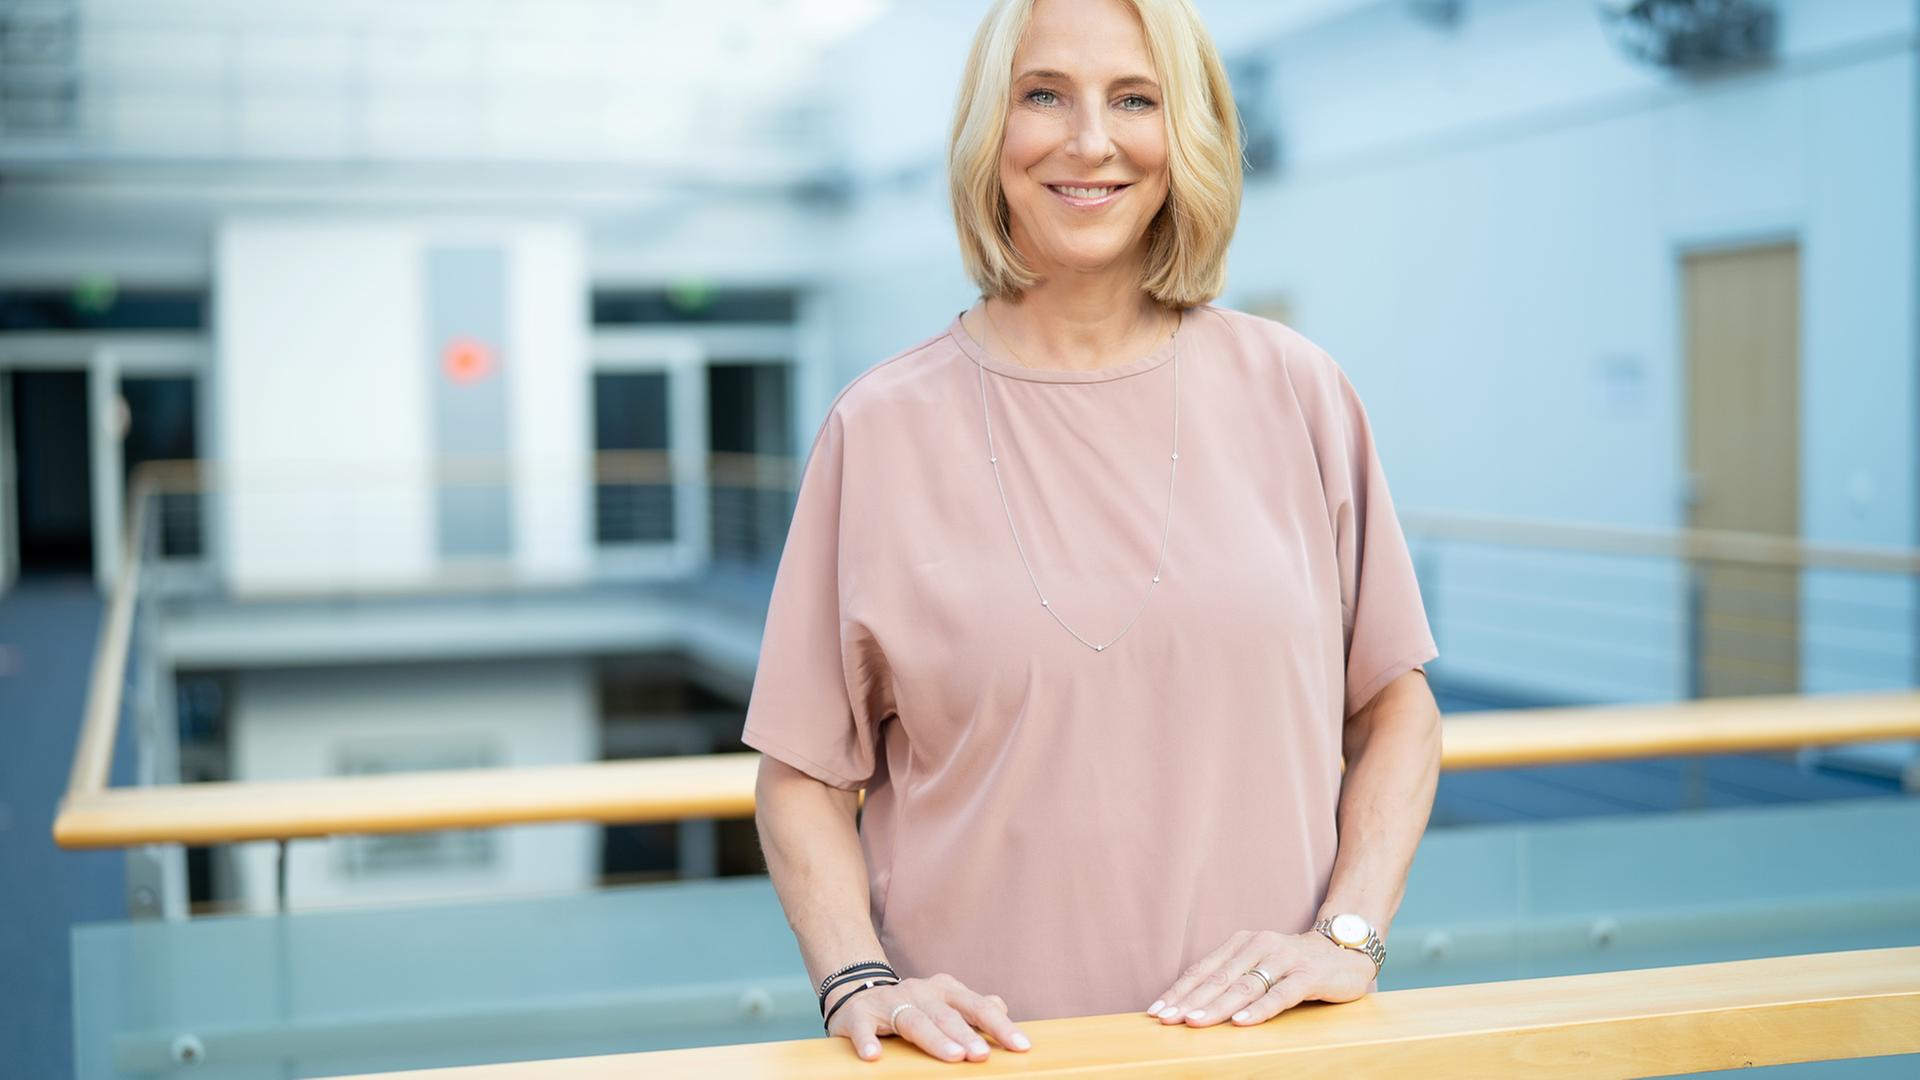 Eine blonde Frau steht in einem Bürogebäude und lächelt in die Kamera